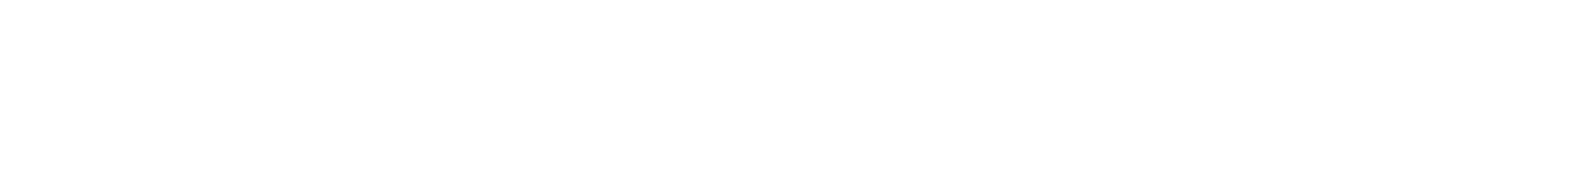 Whitbread Logo groß für dunkle Hintergründe (transparentes PNG)